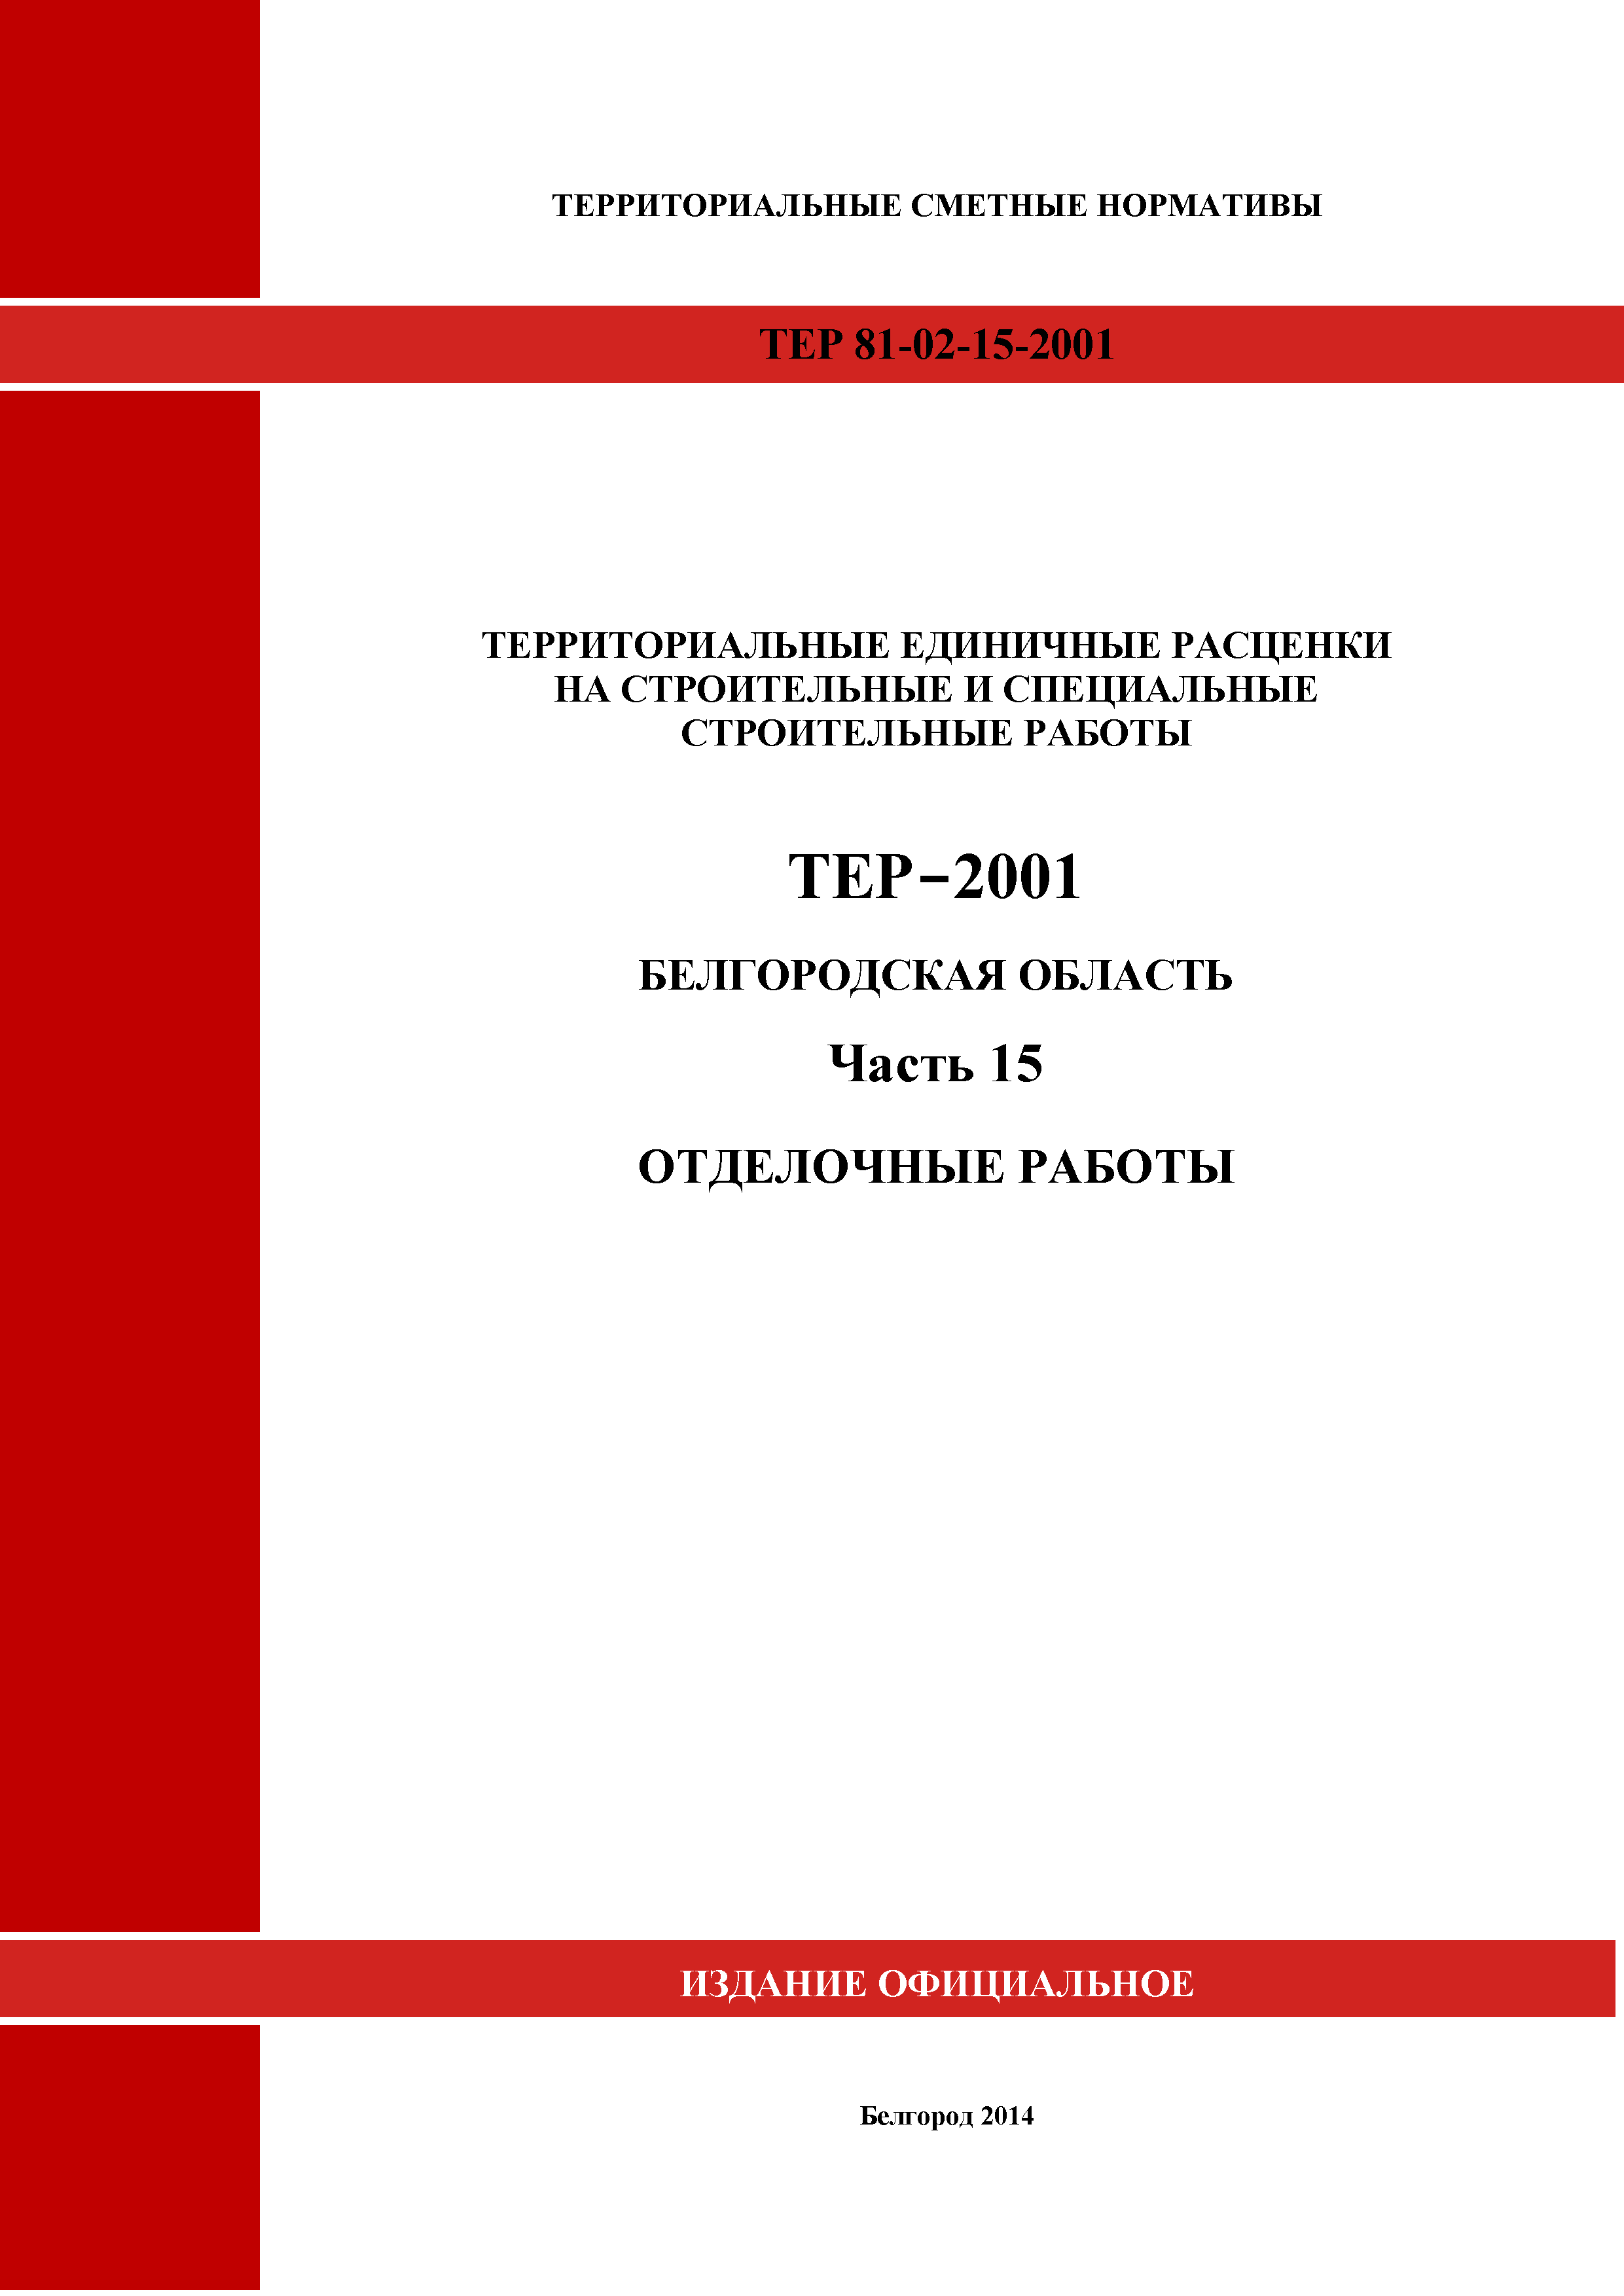 ТЕР Белгородская область 81-02-15-2001